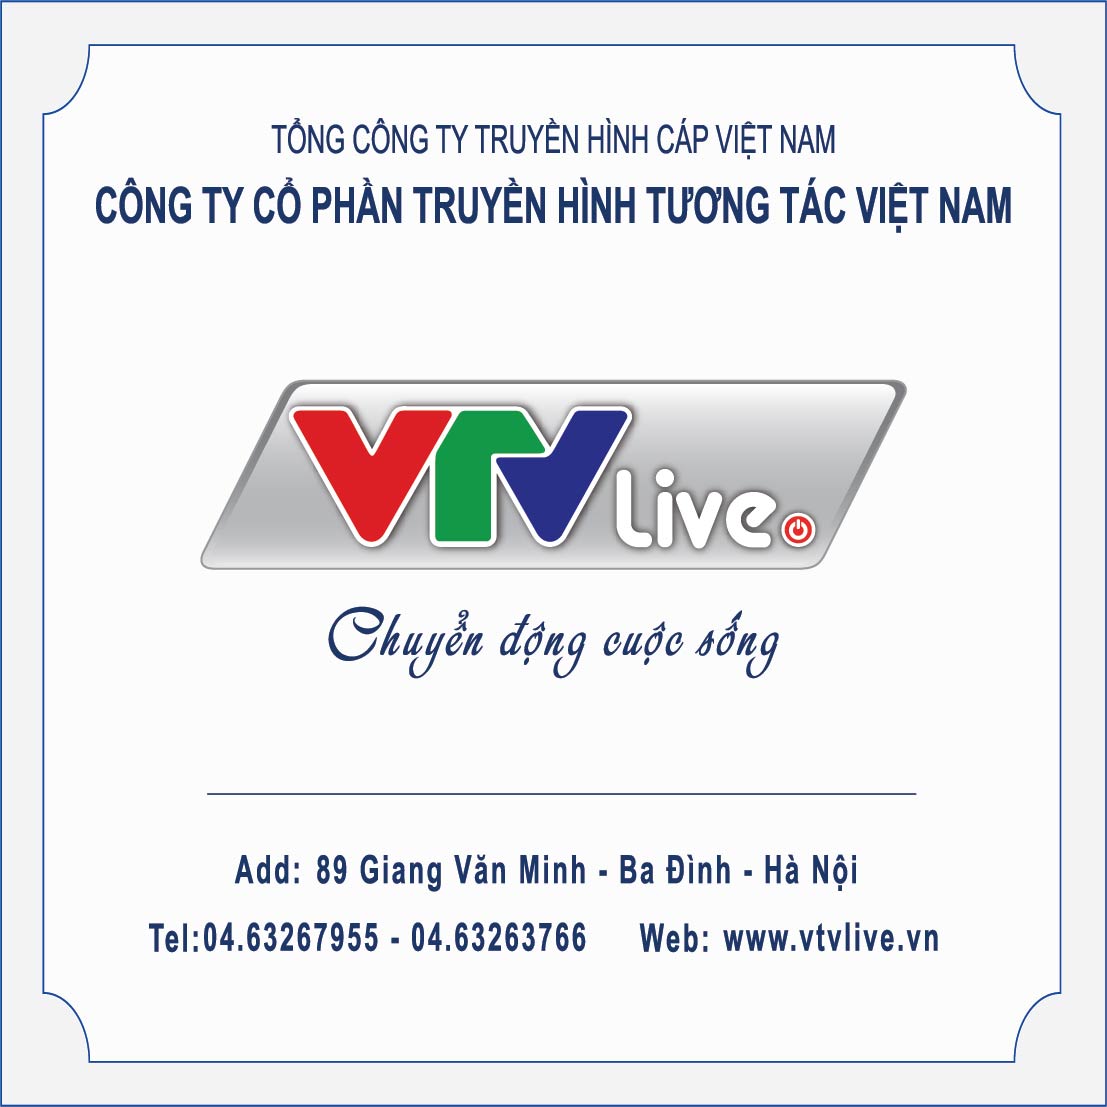 Công ty cổ phần Truyền Hình Tương Tác Việt Nam